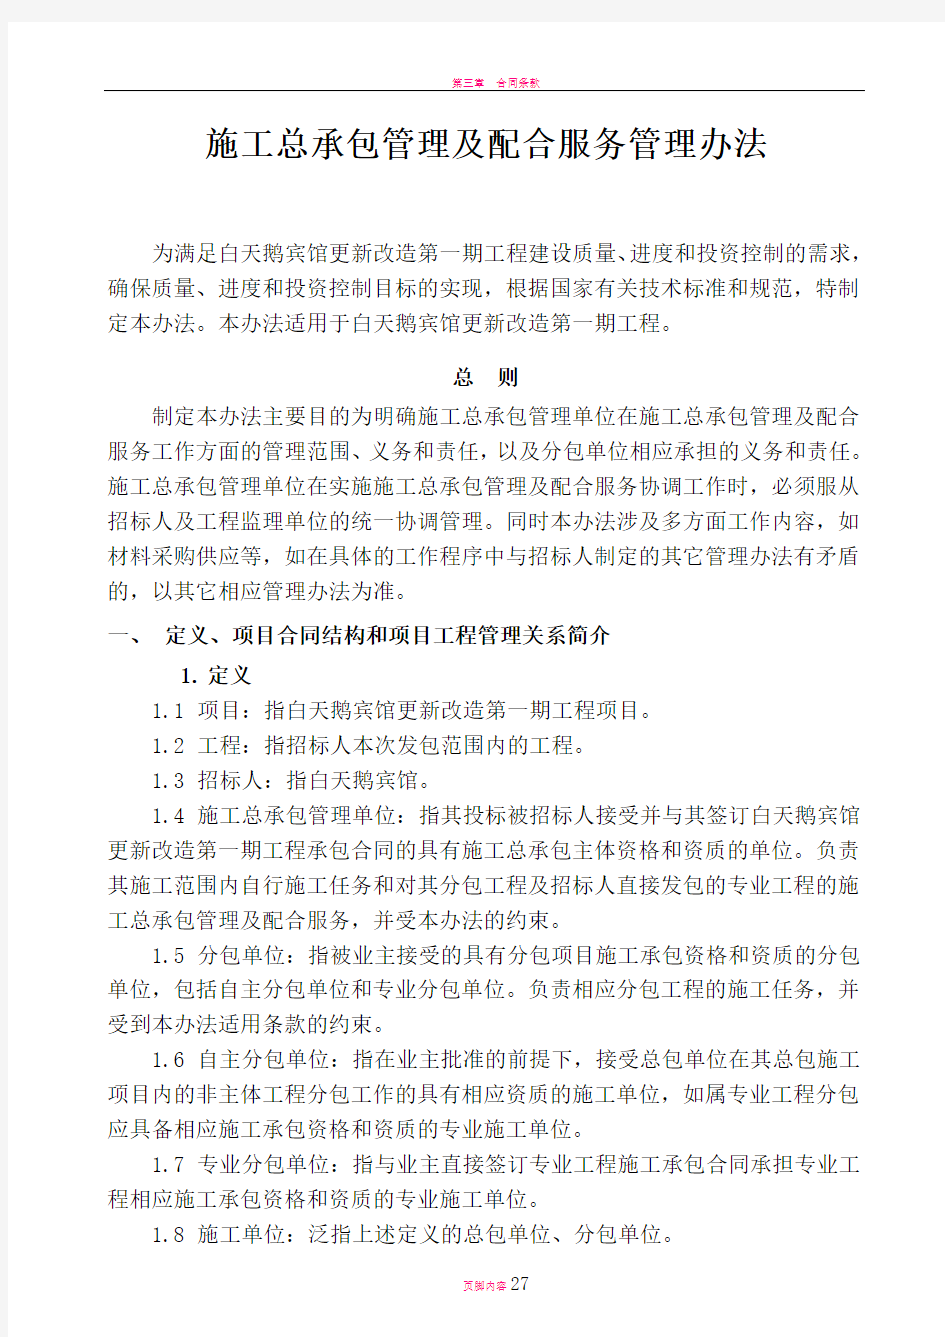 广州白天鹅宾馆更新改造施工总承包管理及配合服务管理办法